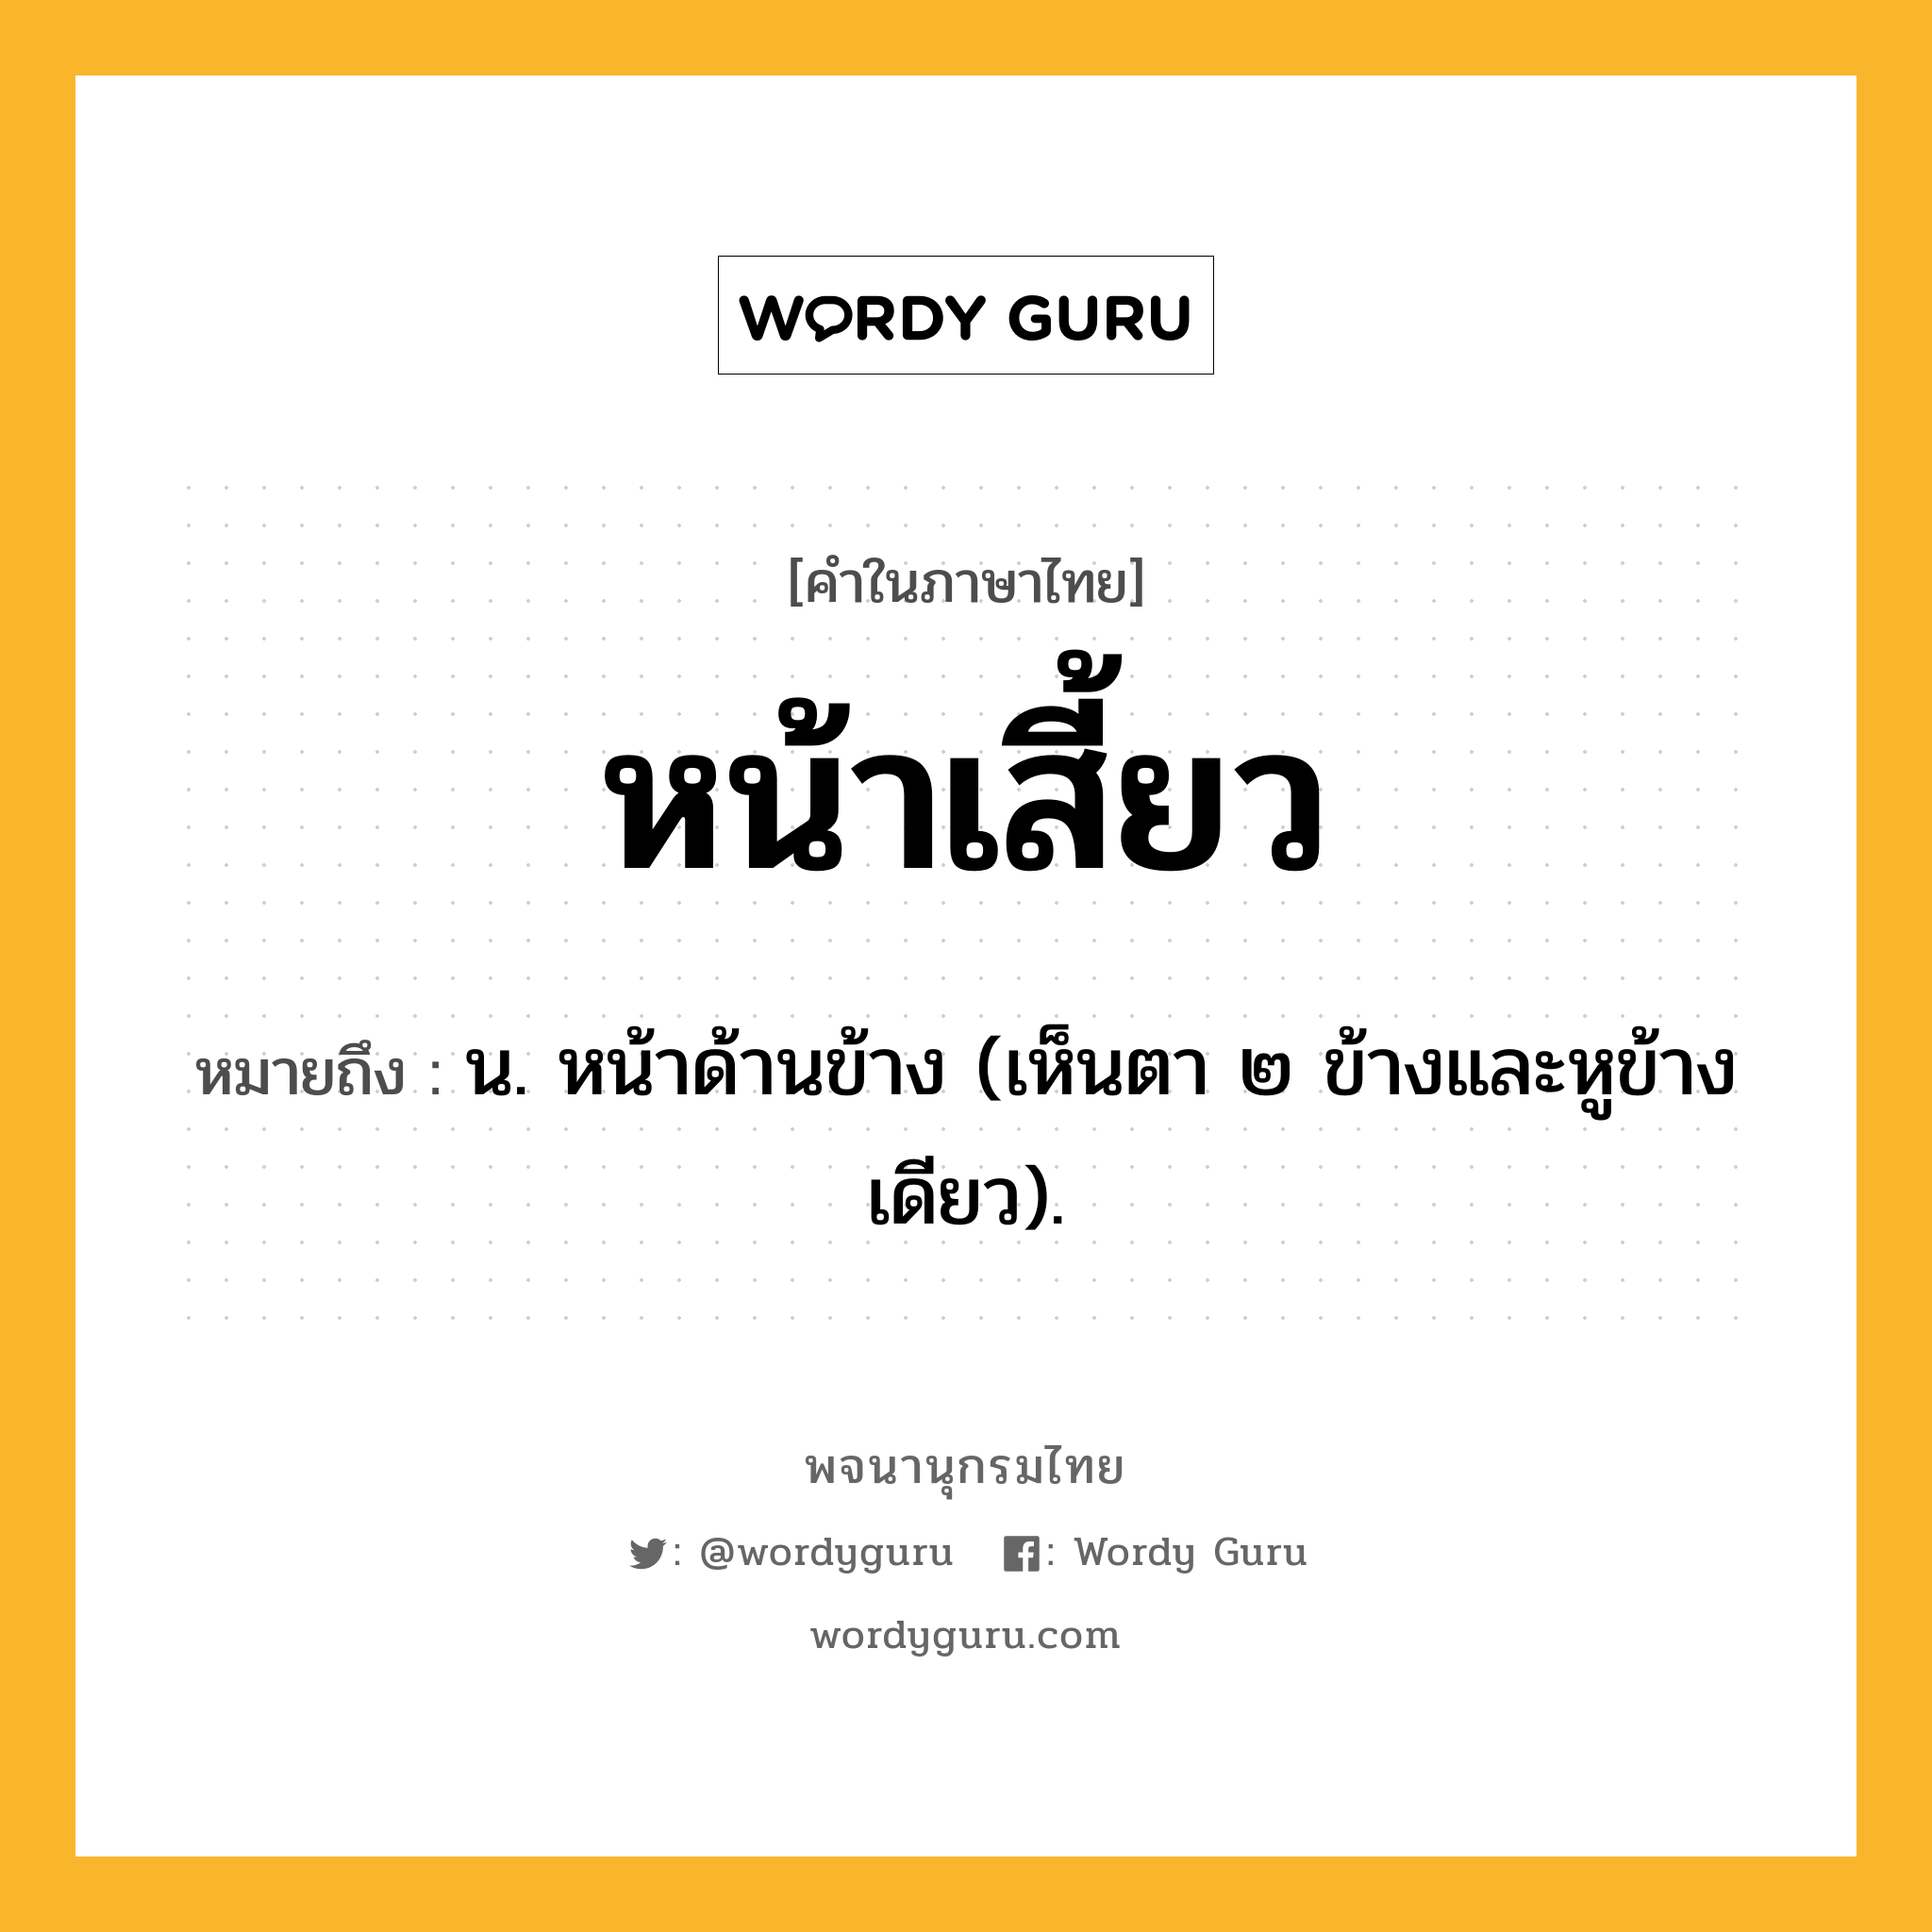 หน้าเสี้ยว ความหมาย หมายถึงอะไร?, คำในภาษาไทย หน้าเสี้ยว หมายถึง น. หน้าด้านข้าง (เห็นตา ๒ ข้างและหูข้างเดียว).